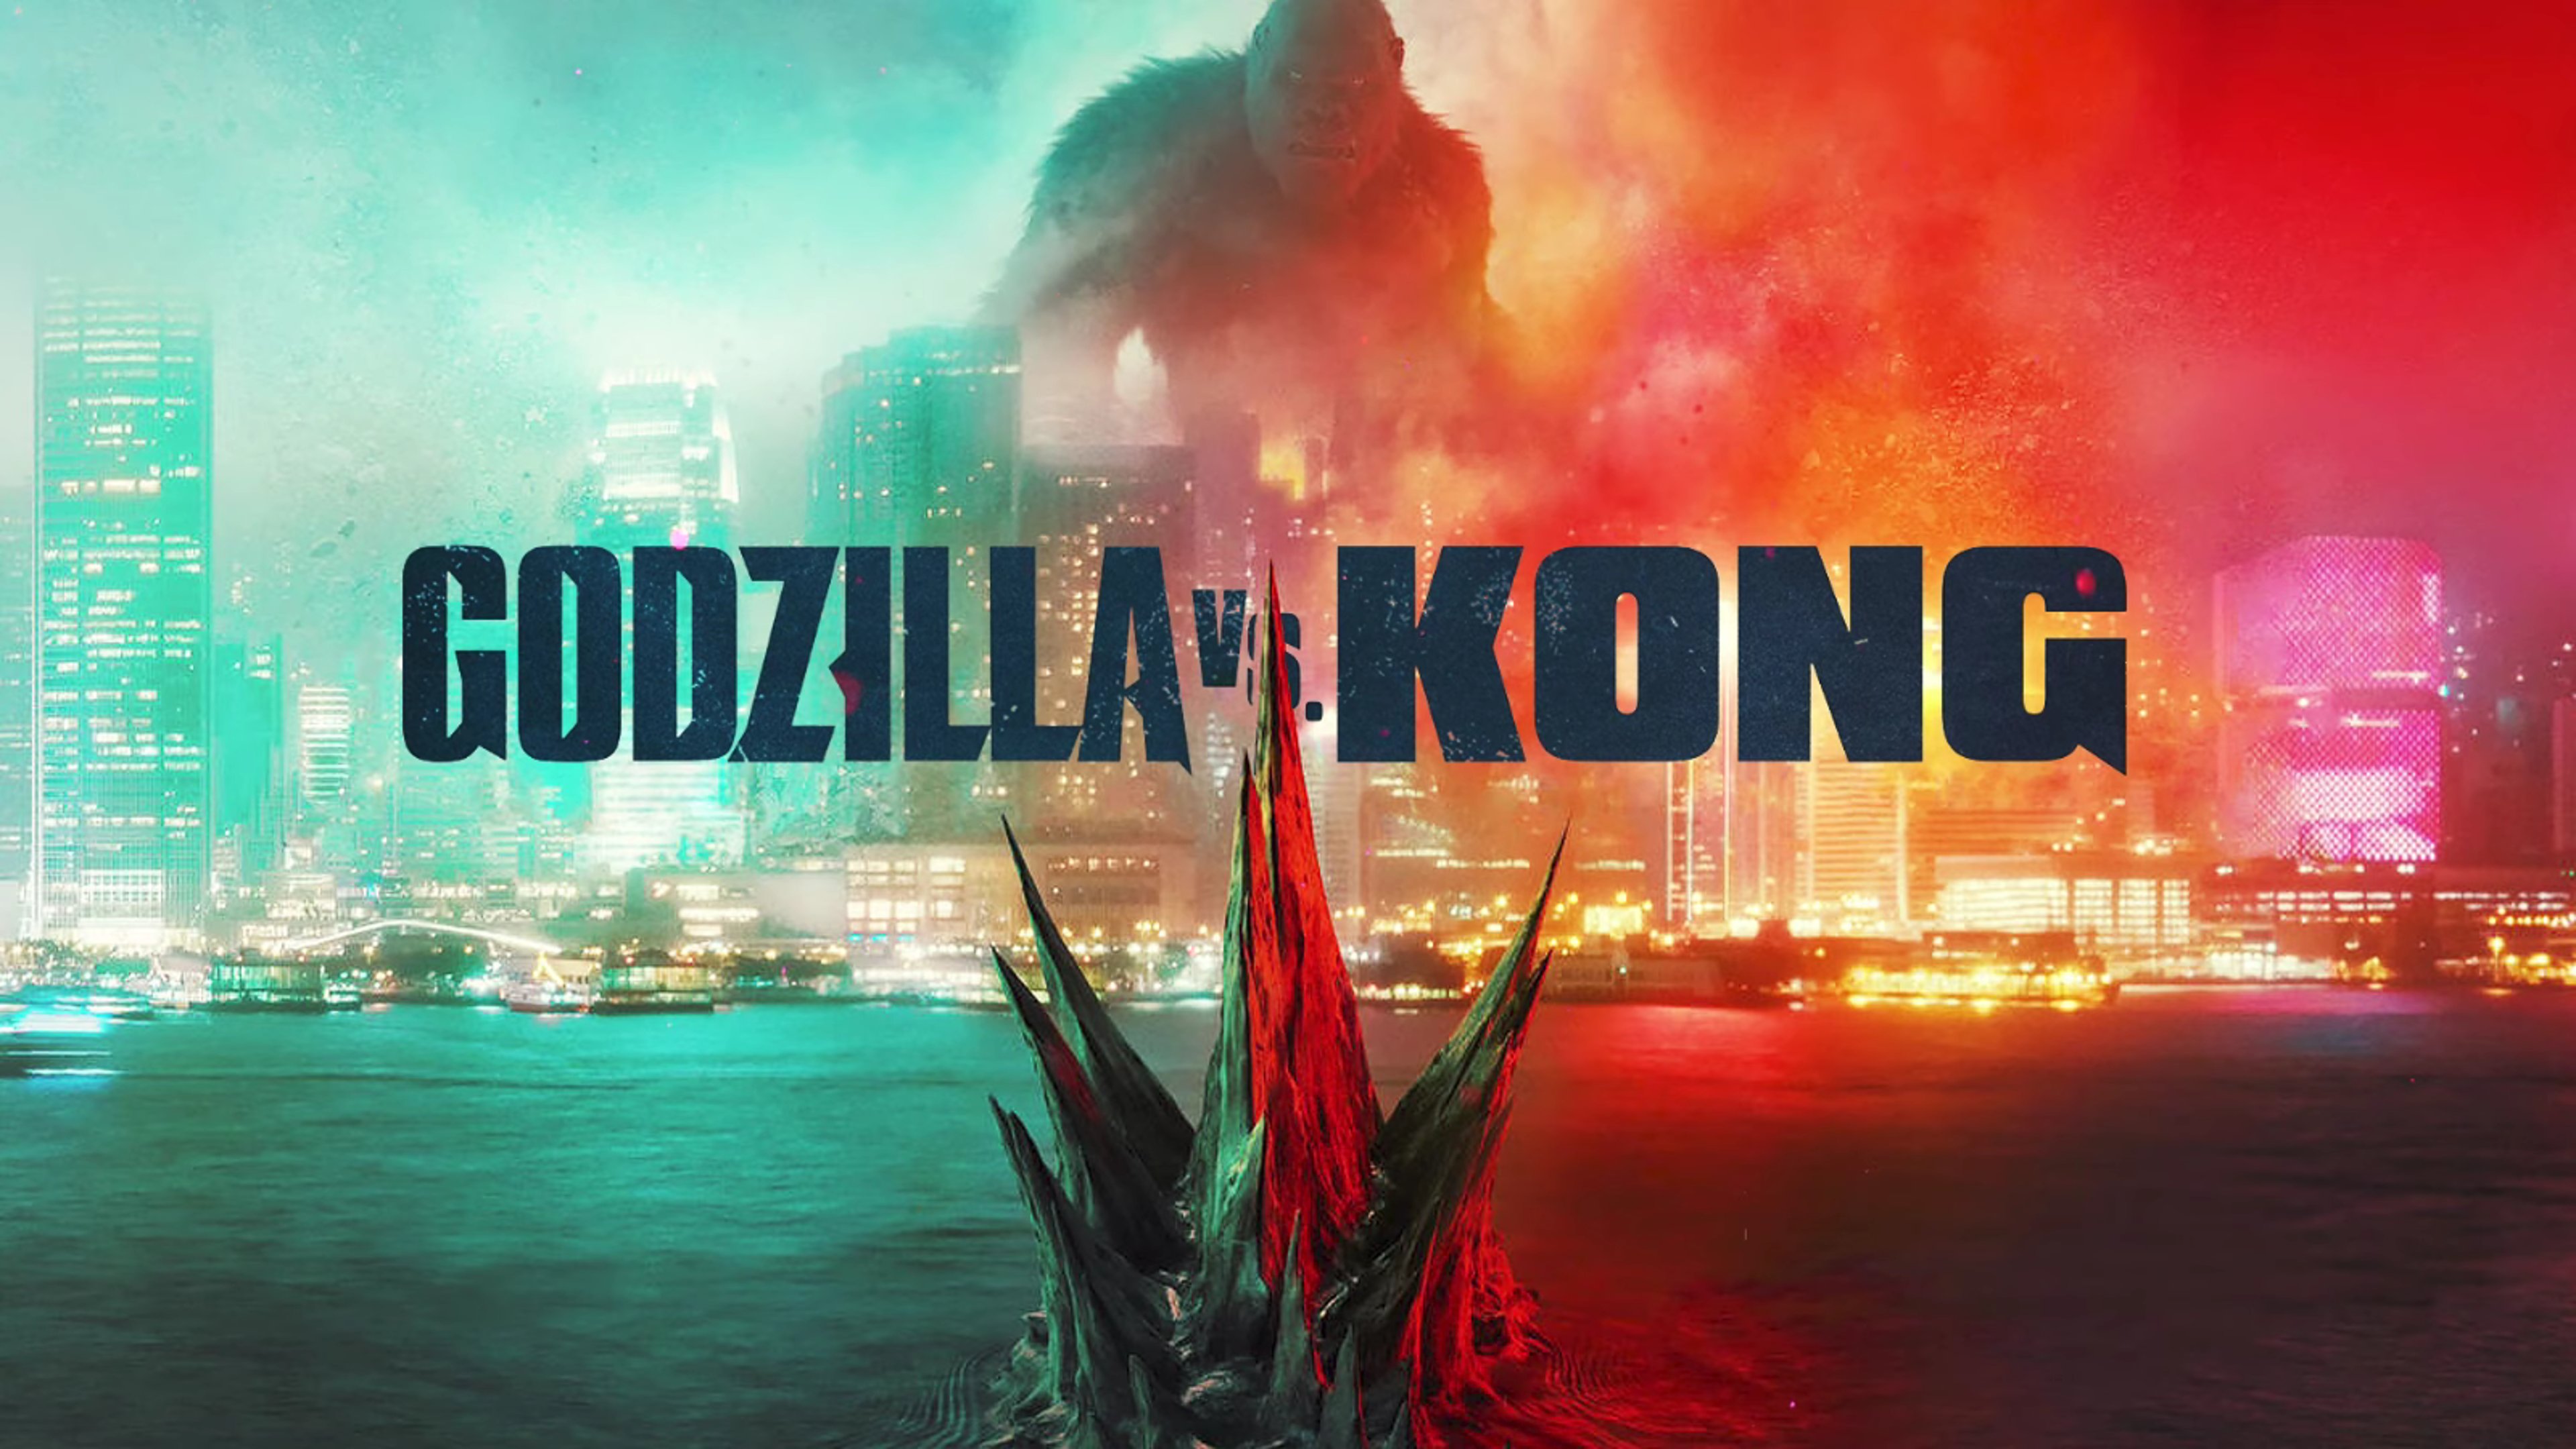 GODZILLA VS KONG #MovieOfTheWeek